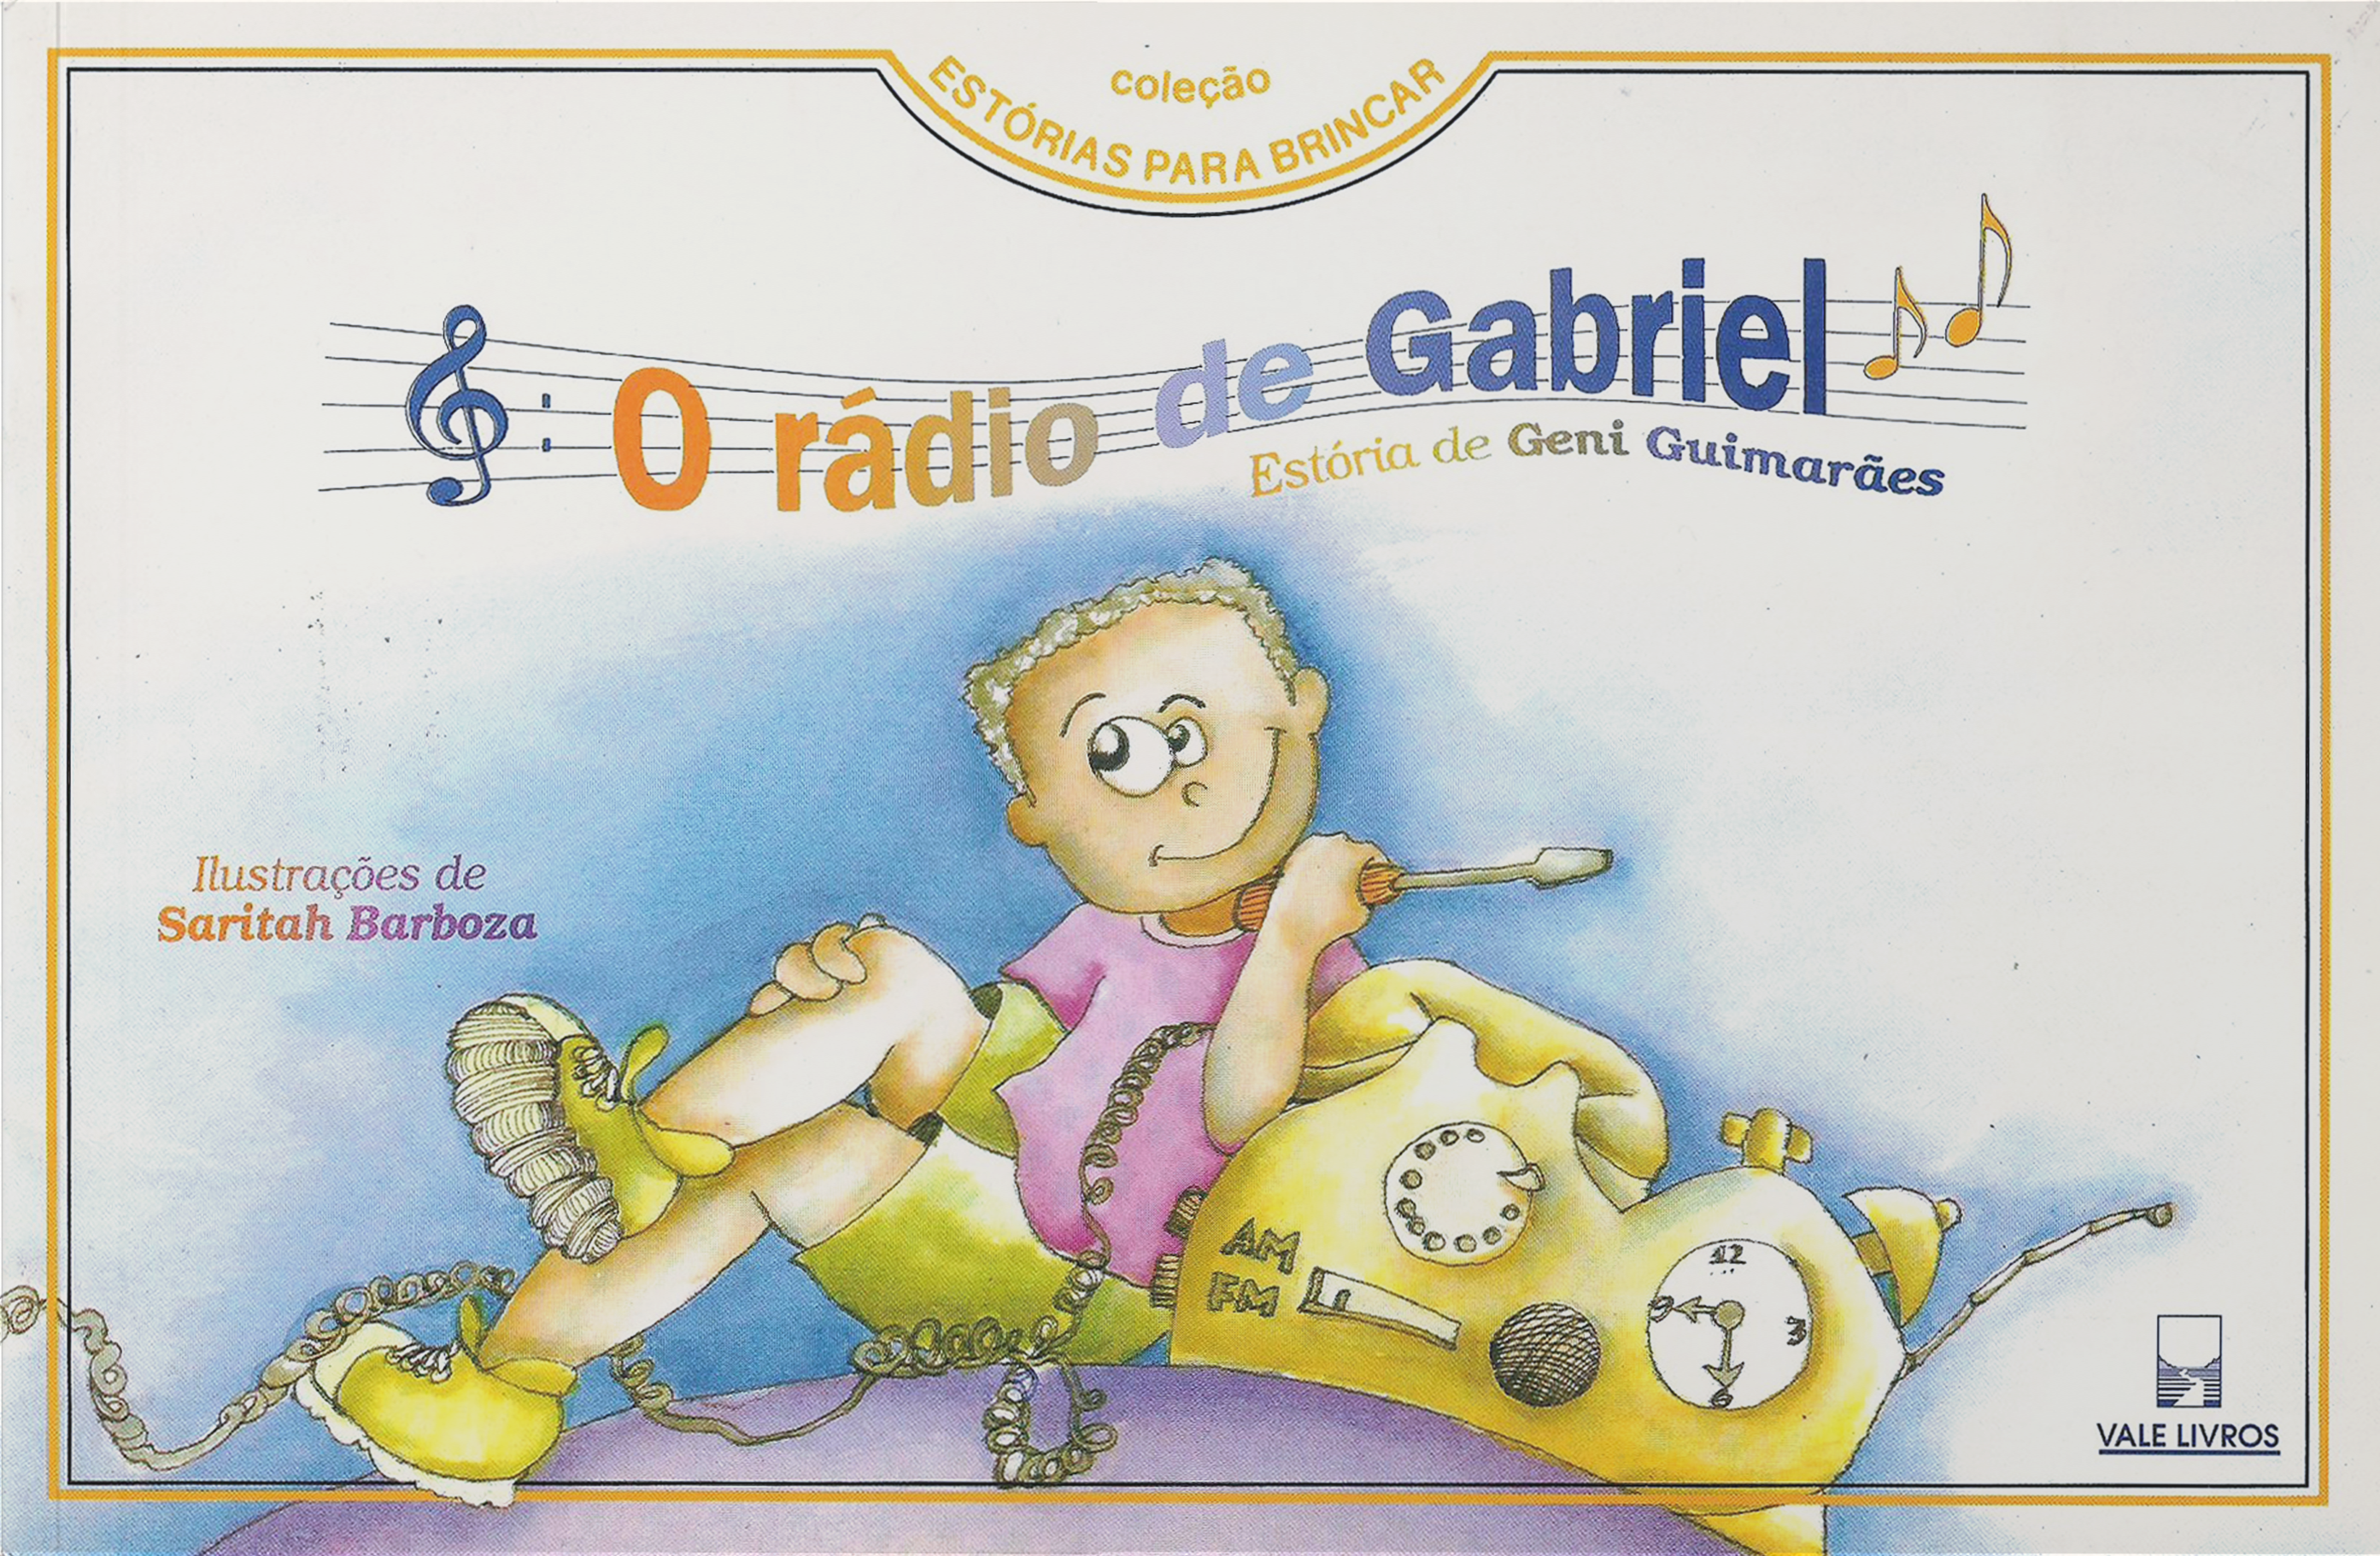 O rádio de Gabriel. Aparecida: Editora Santuário, 1995 (infantil).